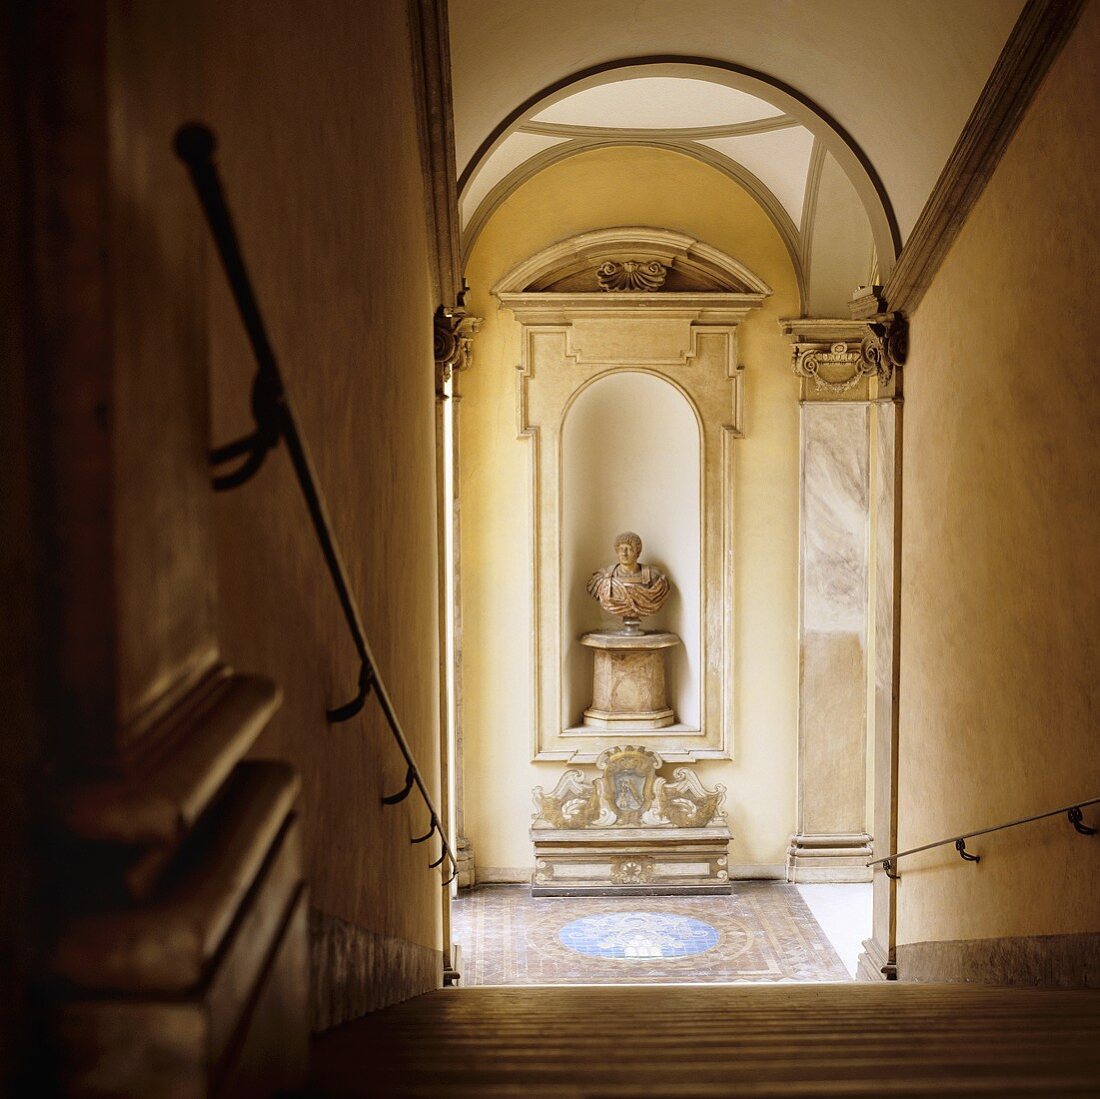 Treppenhaus in einem Palazzo - Blick von Treppe auf Podest mit Büste in Wandnische